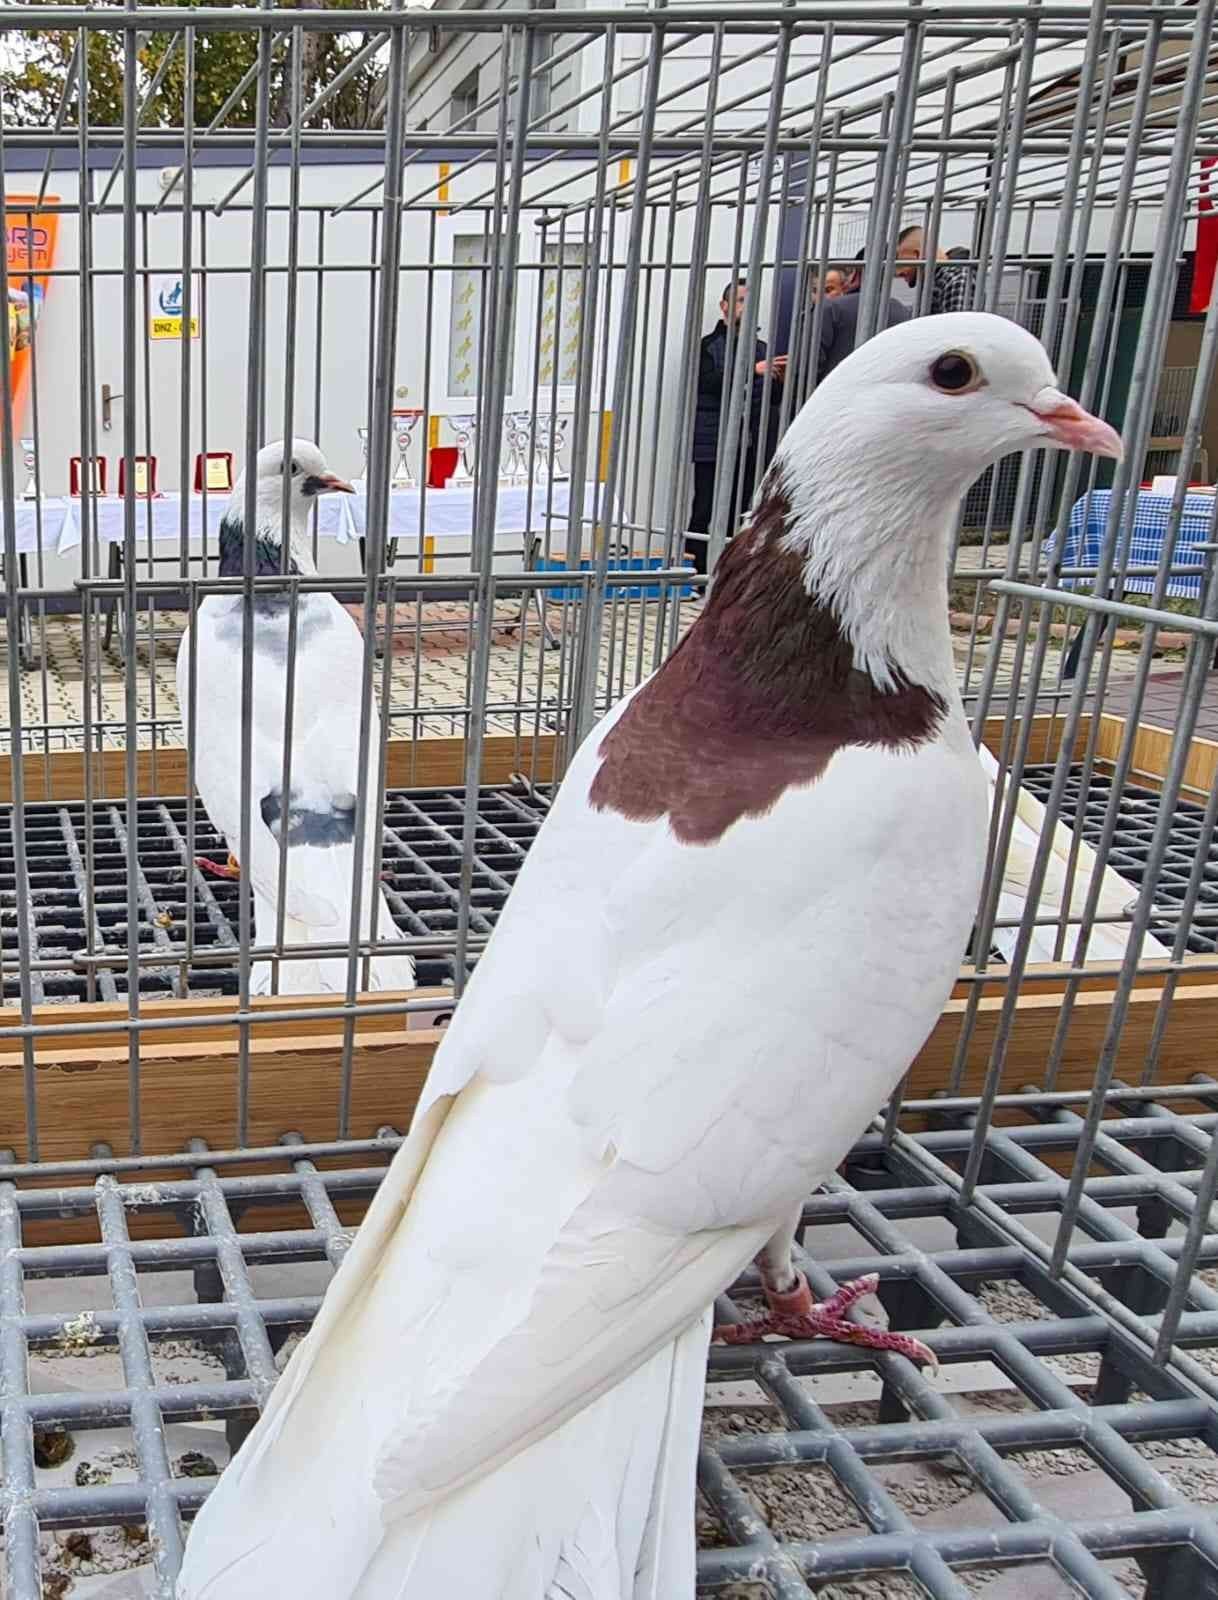 2022’nin en güzel dolapçı güvercinleri belirlendi